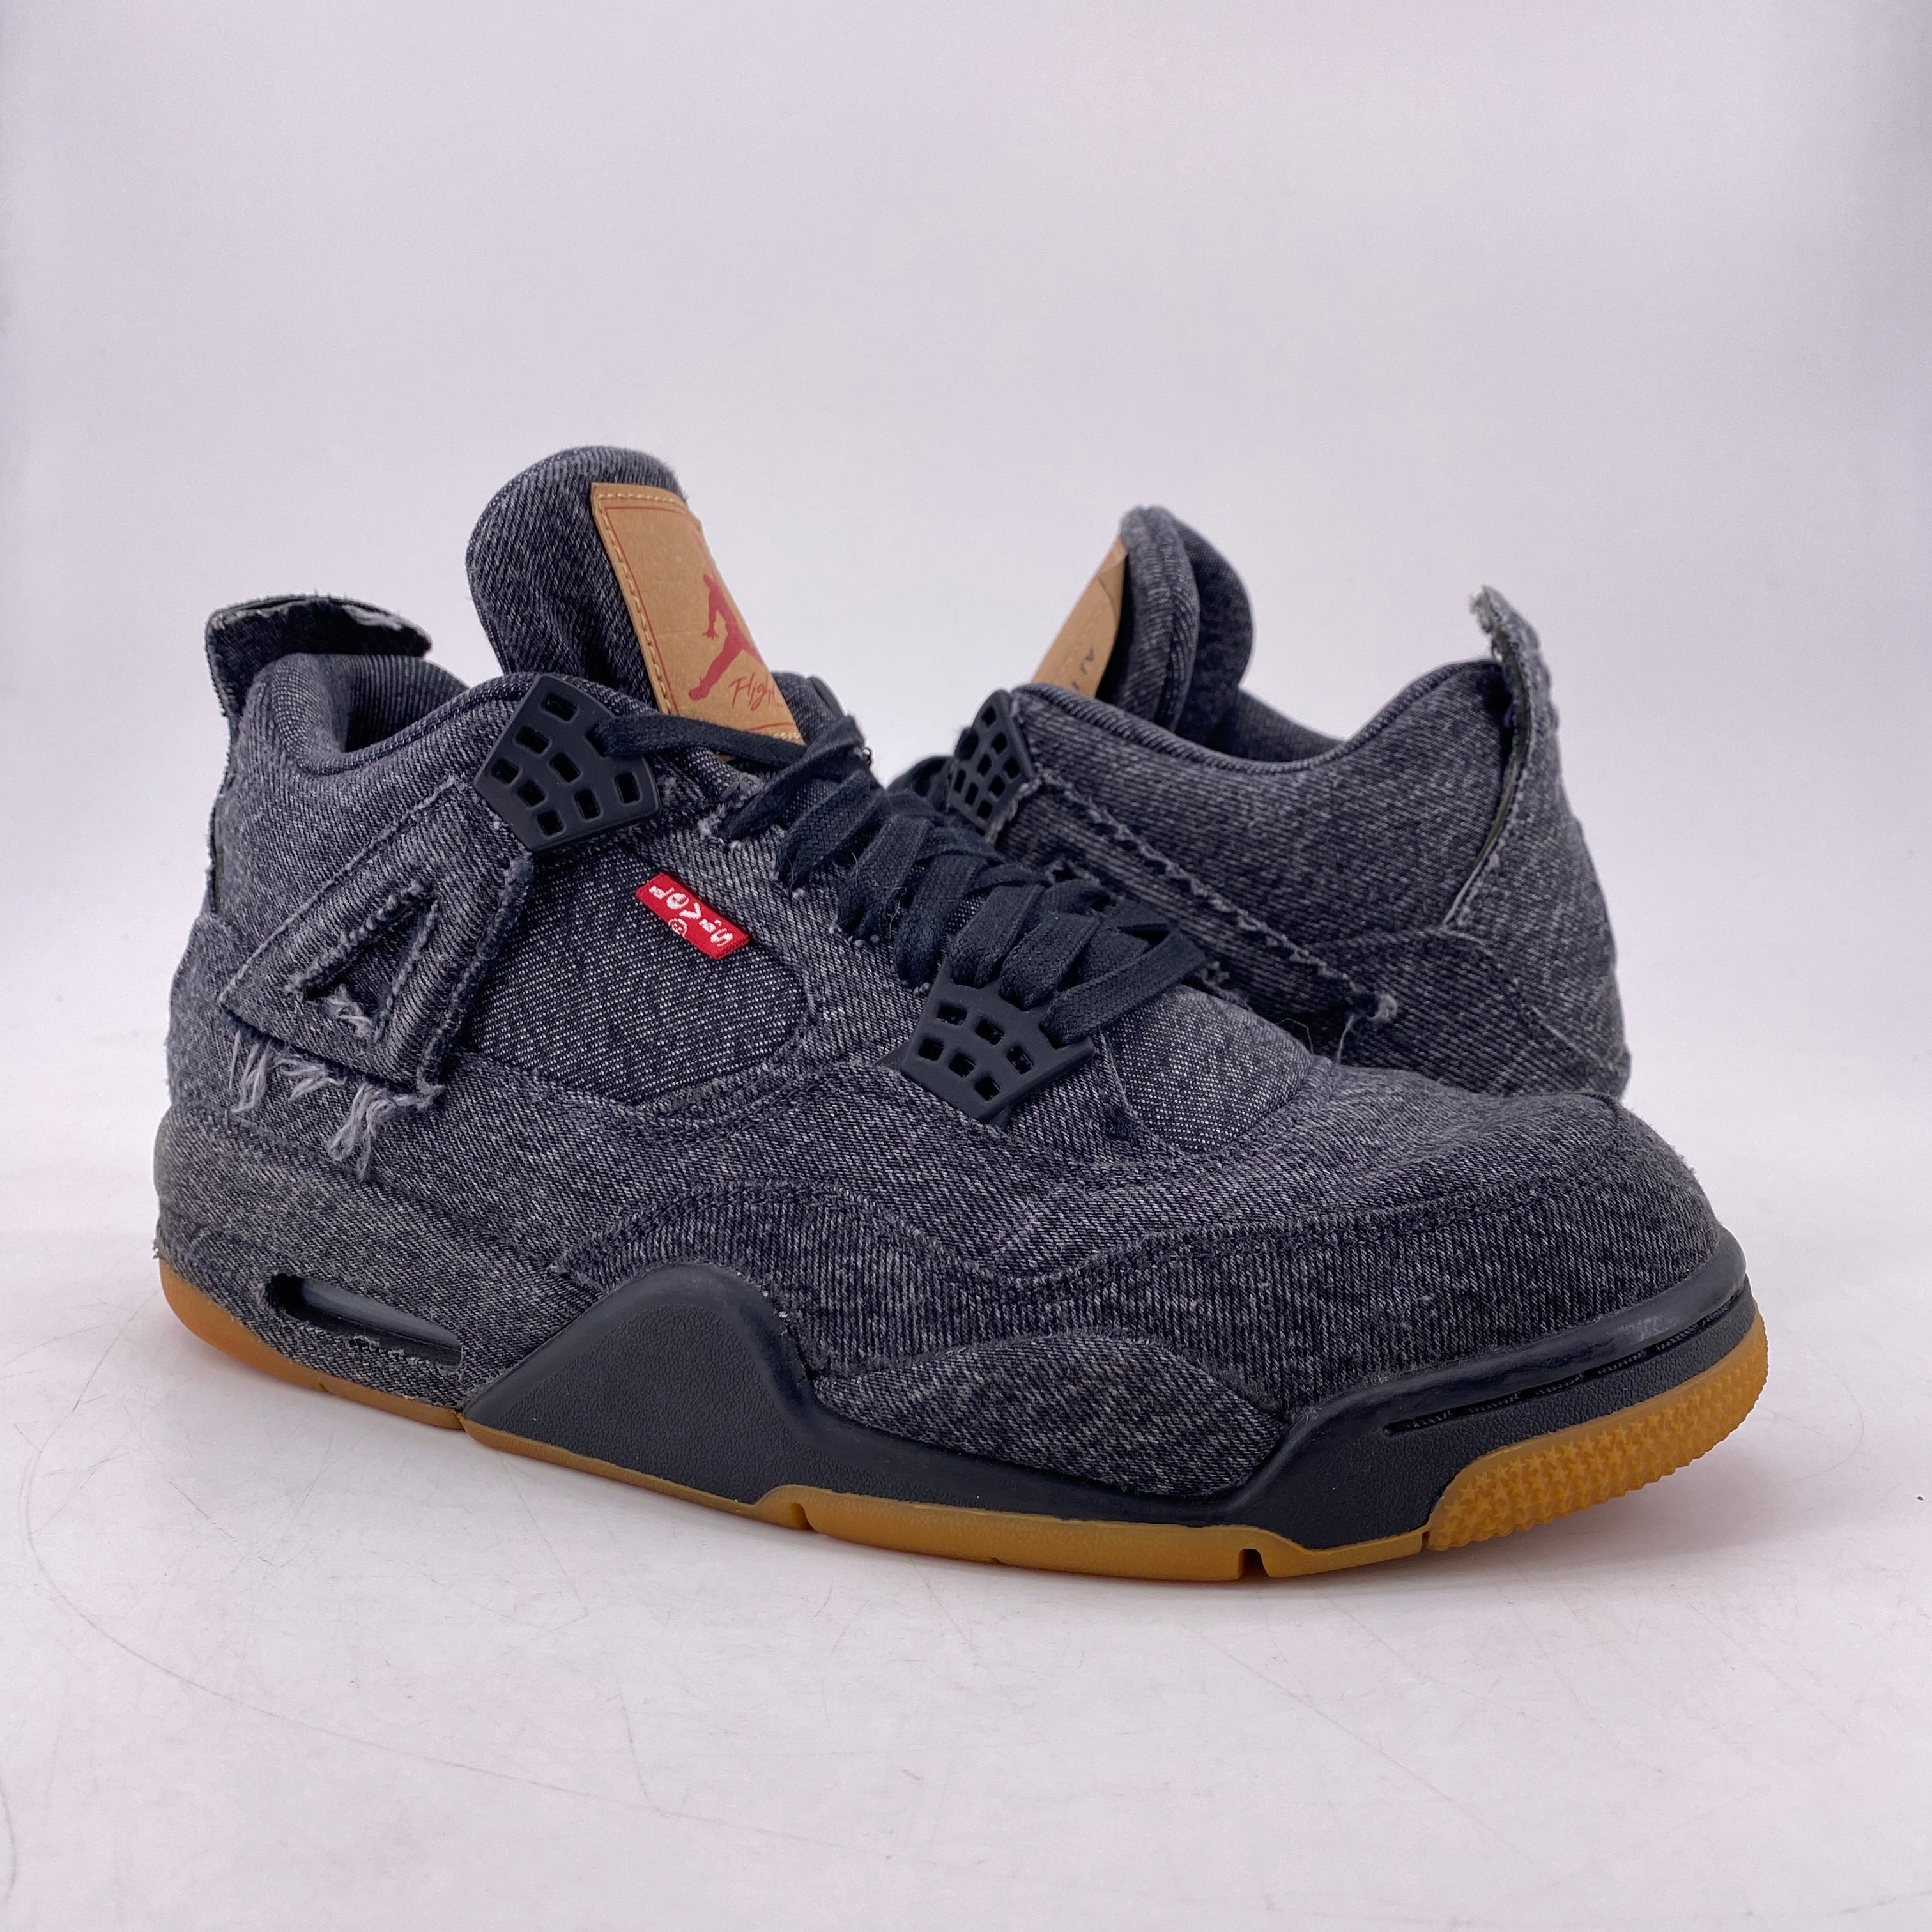 Air Jordan 4 Retro &quot;Levis Black Denim&quot; 2018 Used Size 9.5